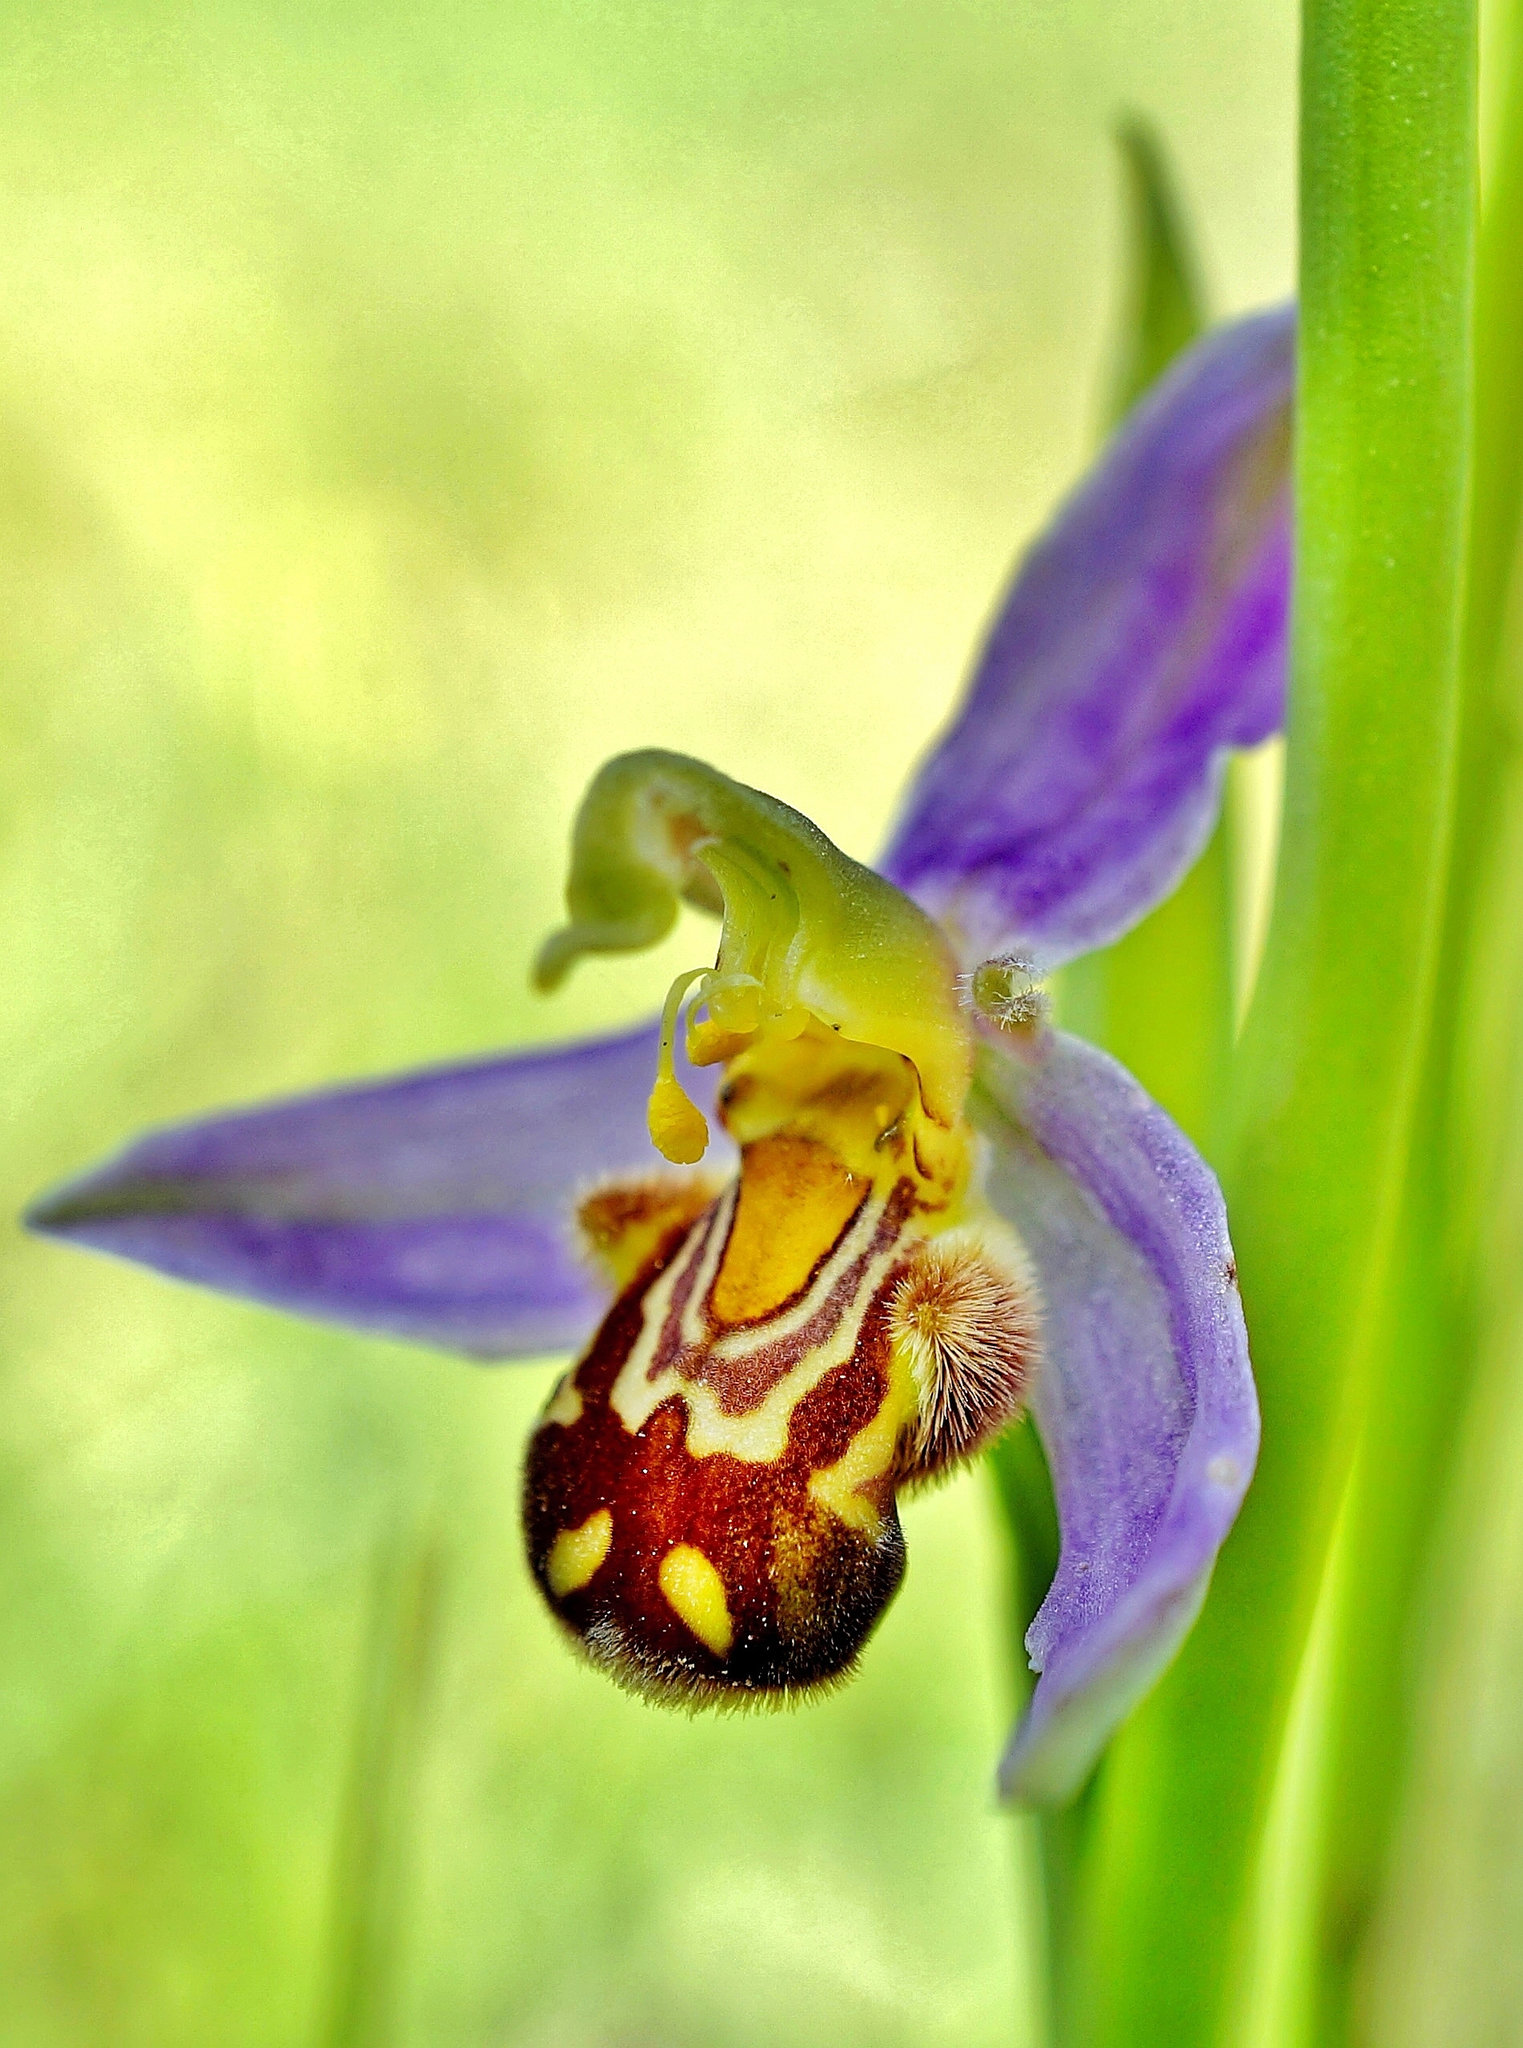 Bienen-Ragwurz - Bee orchid - Ophrys apifera